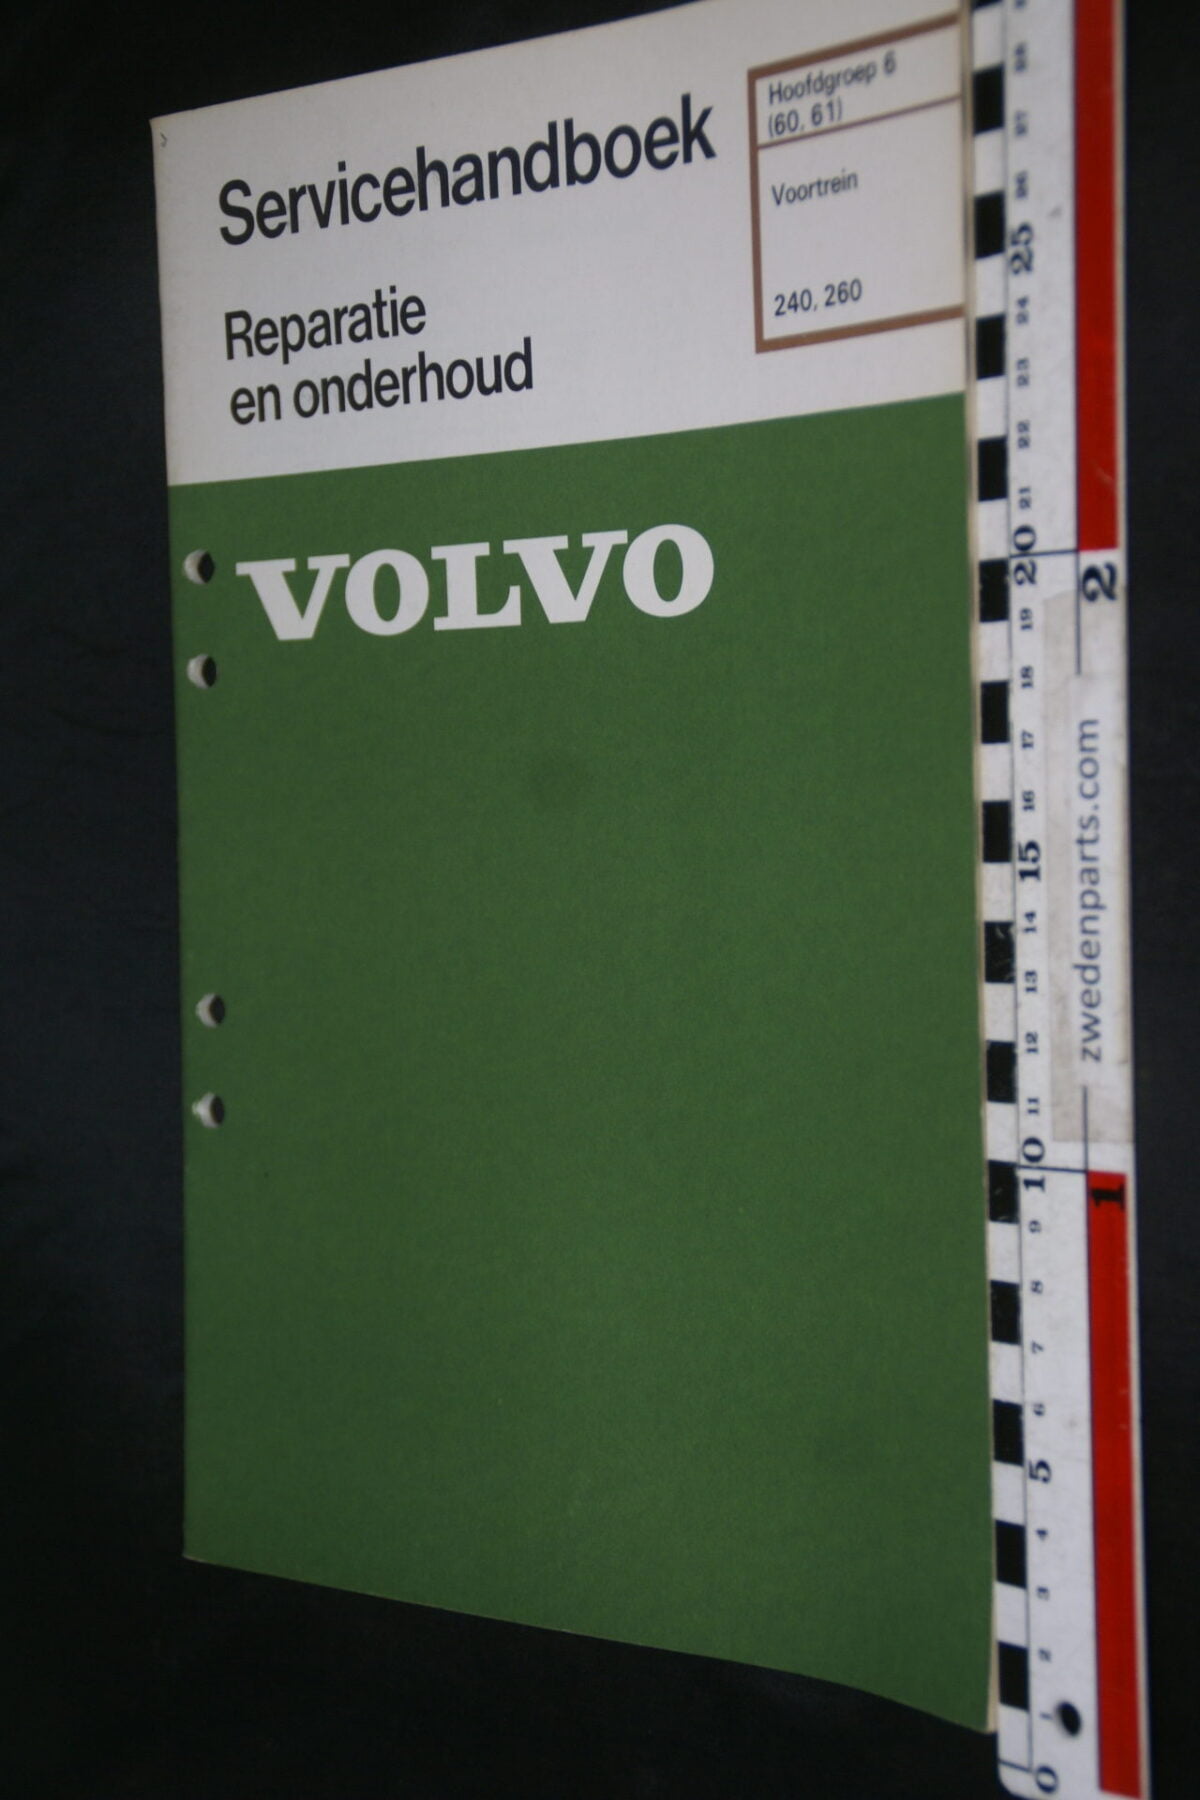 DSC08630 1979 origineel Volvo 240, 260 servicehandboek  6 (60,61) voortrein 1 van 800 TP 12390-1